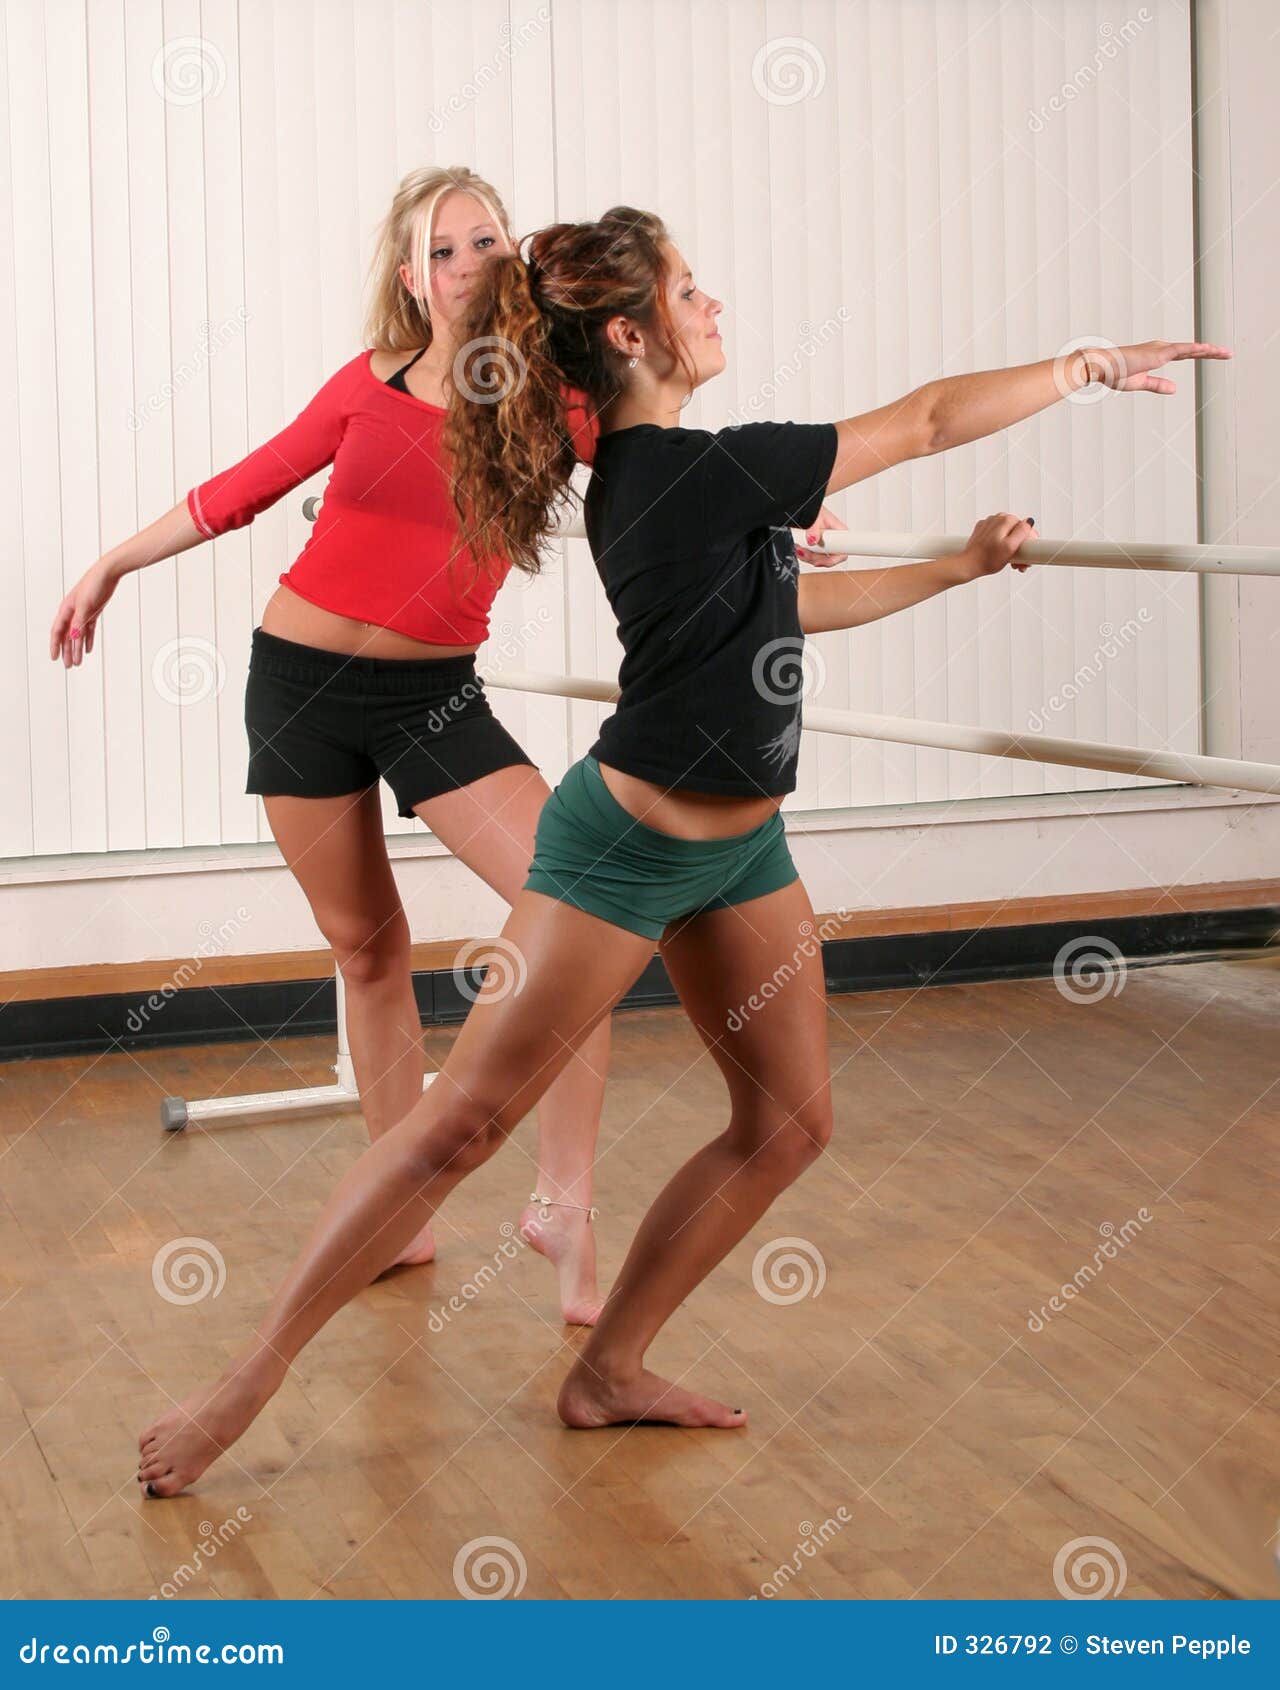 Teen Girls Dance